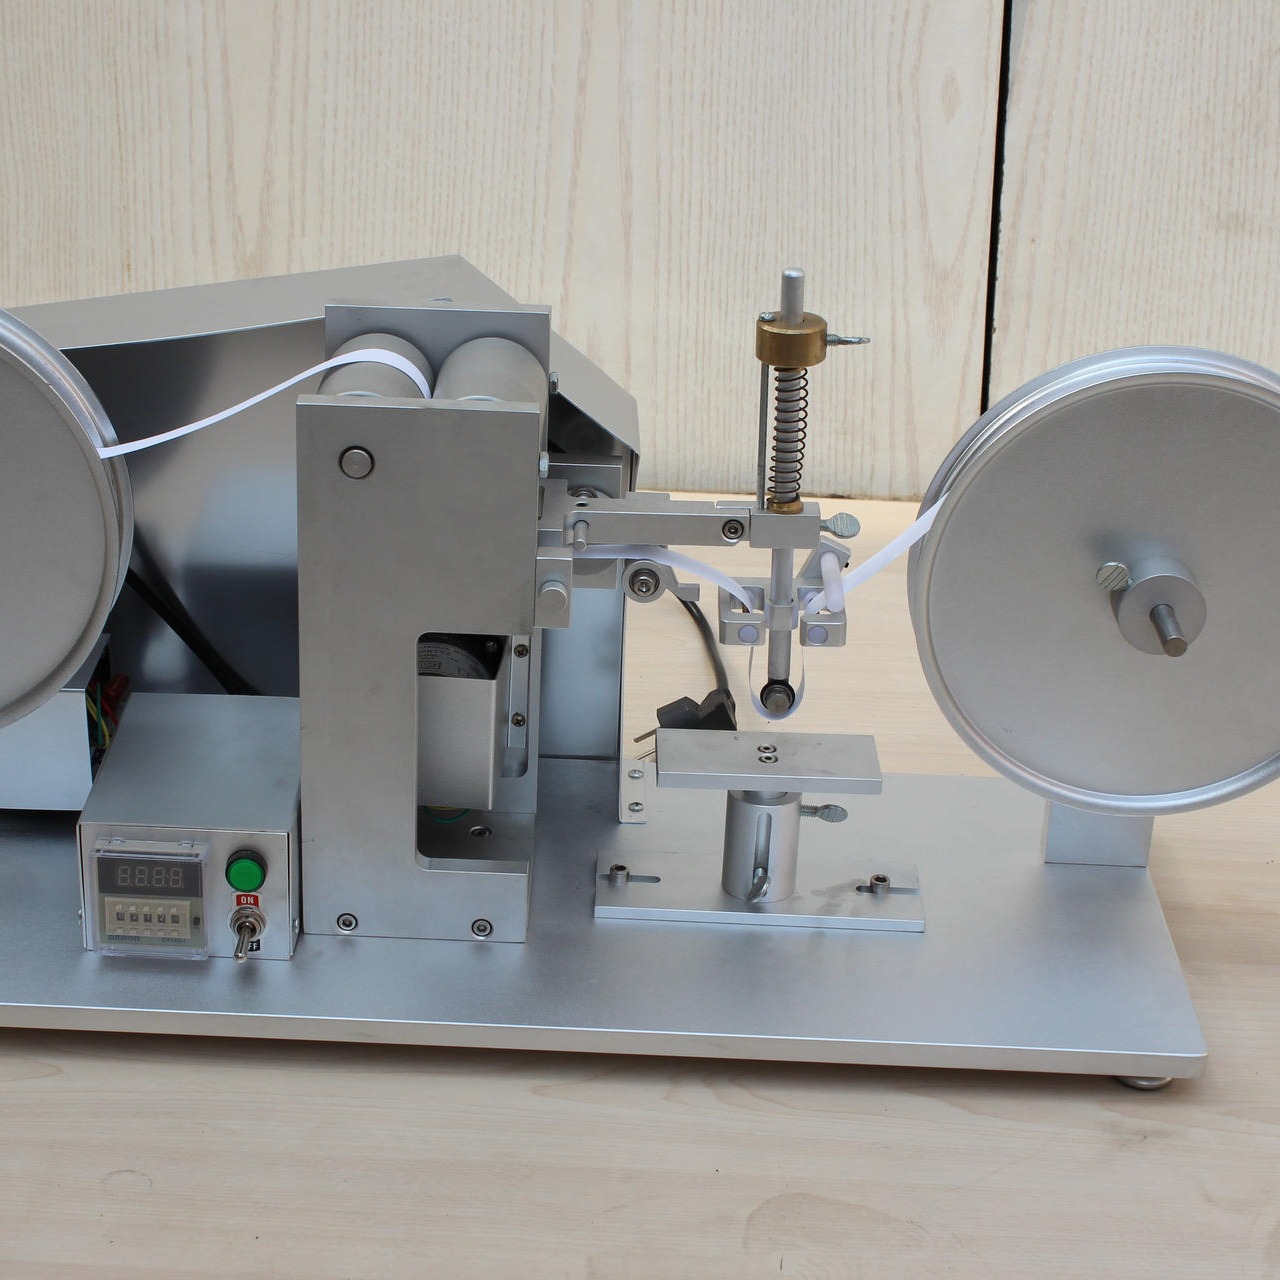 海莱斯HLS-9006 RCA纸带耐磨试验机 用于各种表面涂装(电镀、烤漆、丝印等）试品之耐磨擦试验